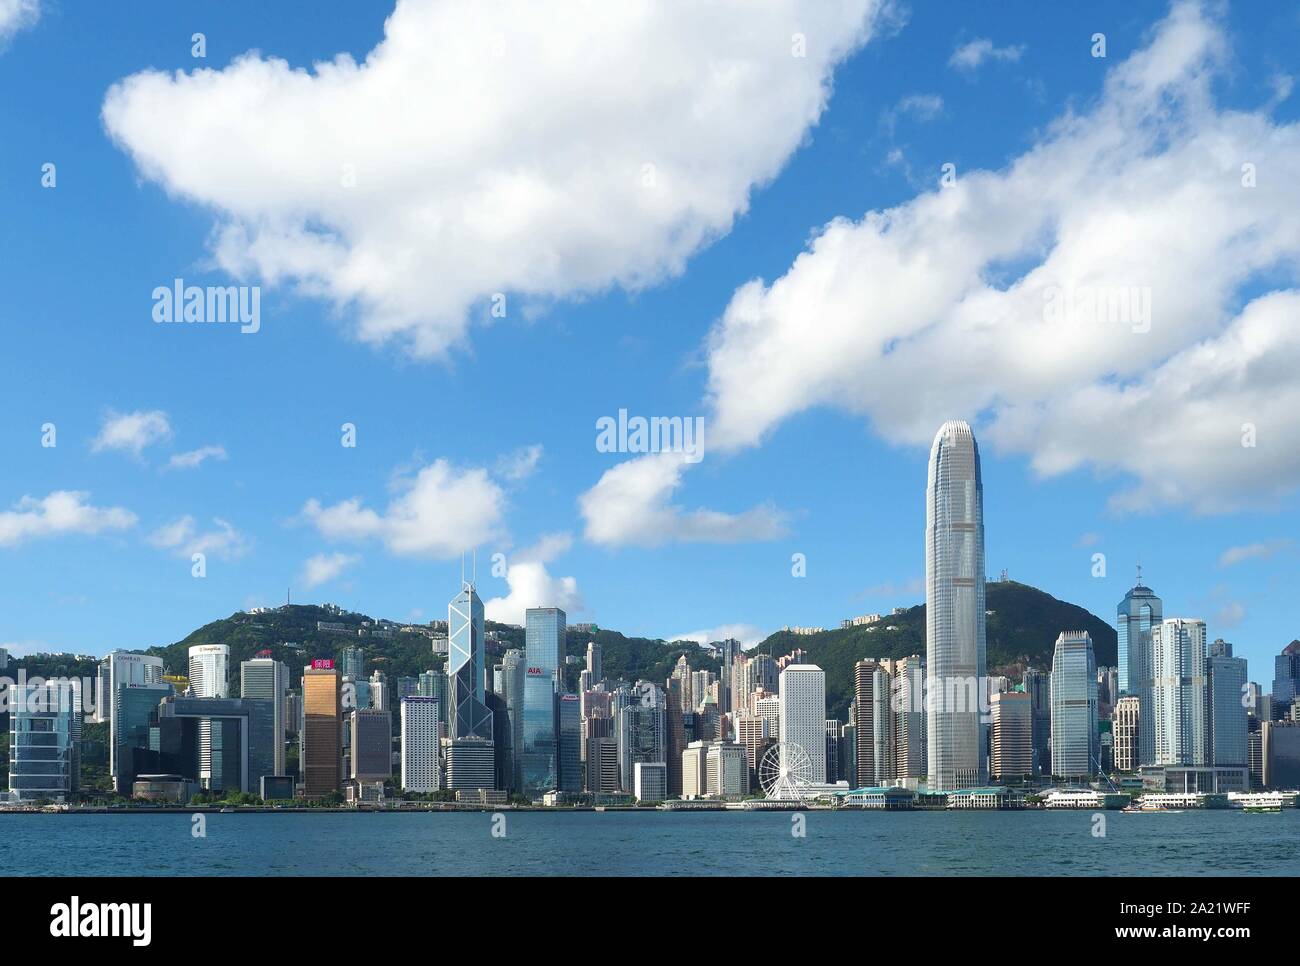 Un grand angle de vue sur le port de Hong Kong et les gratte-ciel de l'île de Hong Kong sous un ciel bleu avec des nuages blancs Banque D'Images